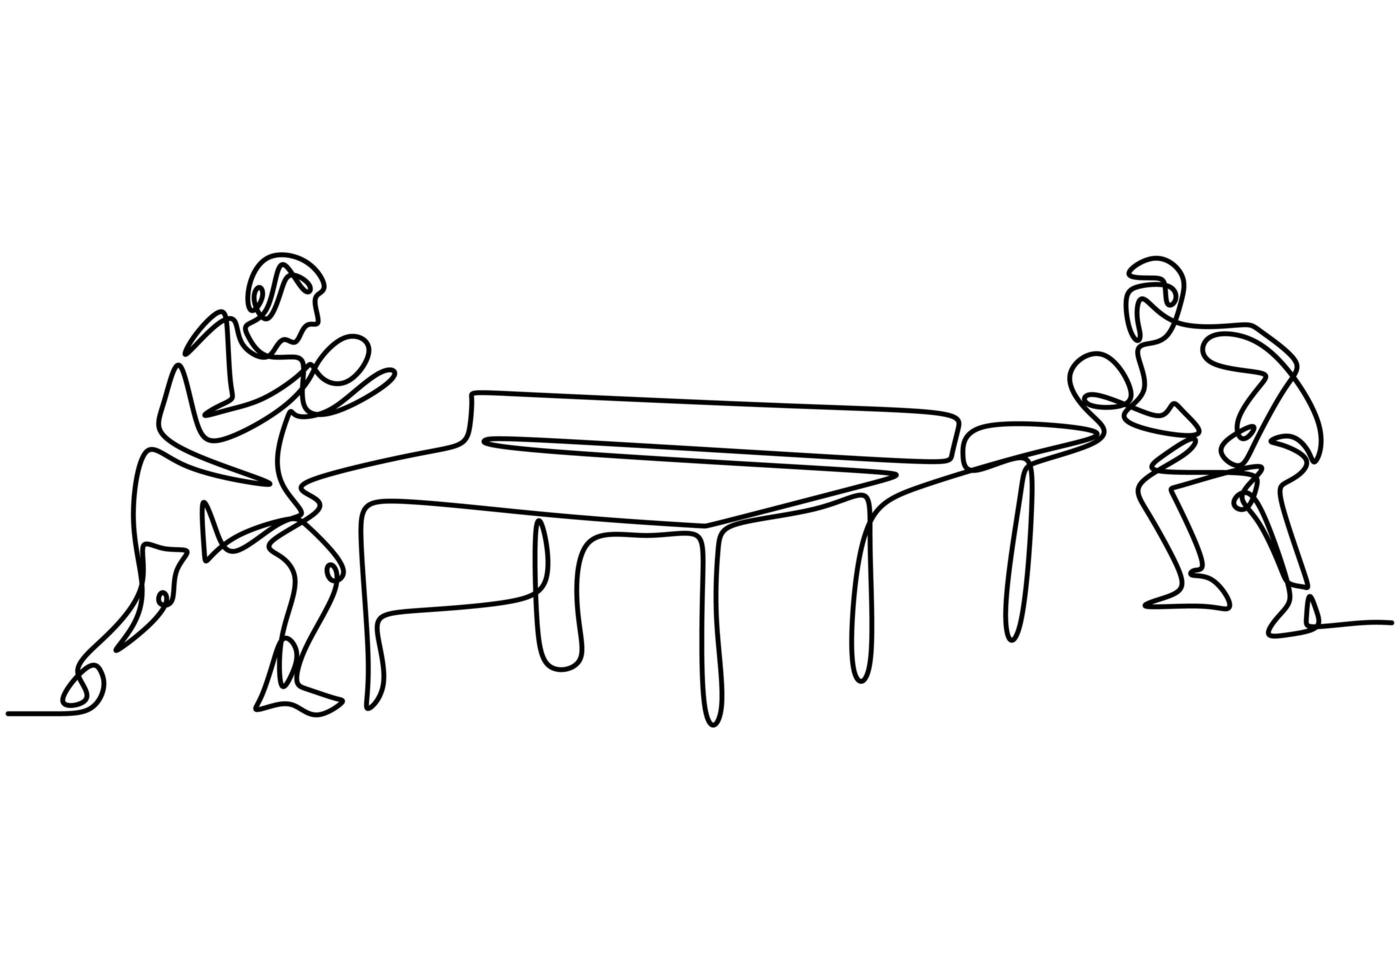 kontinuierliche einzeilige Zeichnung von jungen agilen Tischtennisspielern, die den Ball schlagen. Zwei Athleten spielen Tischtennis. vektor